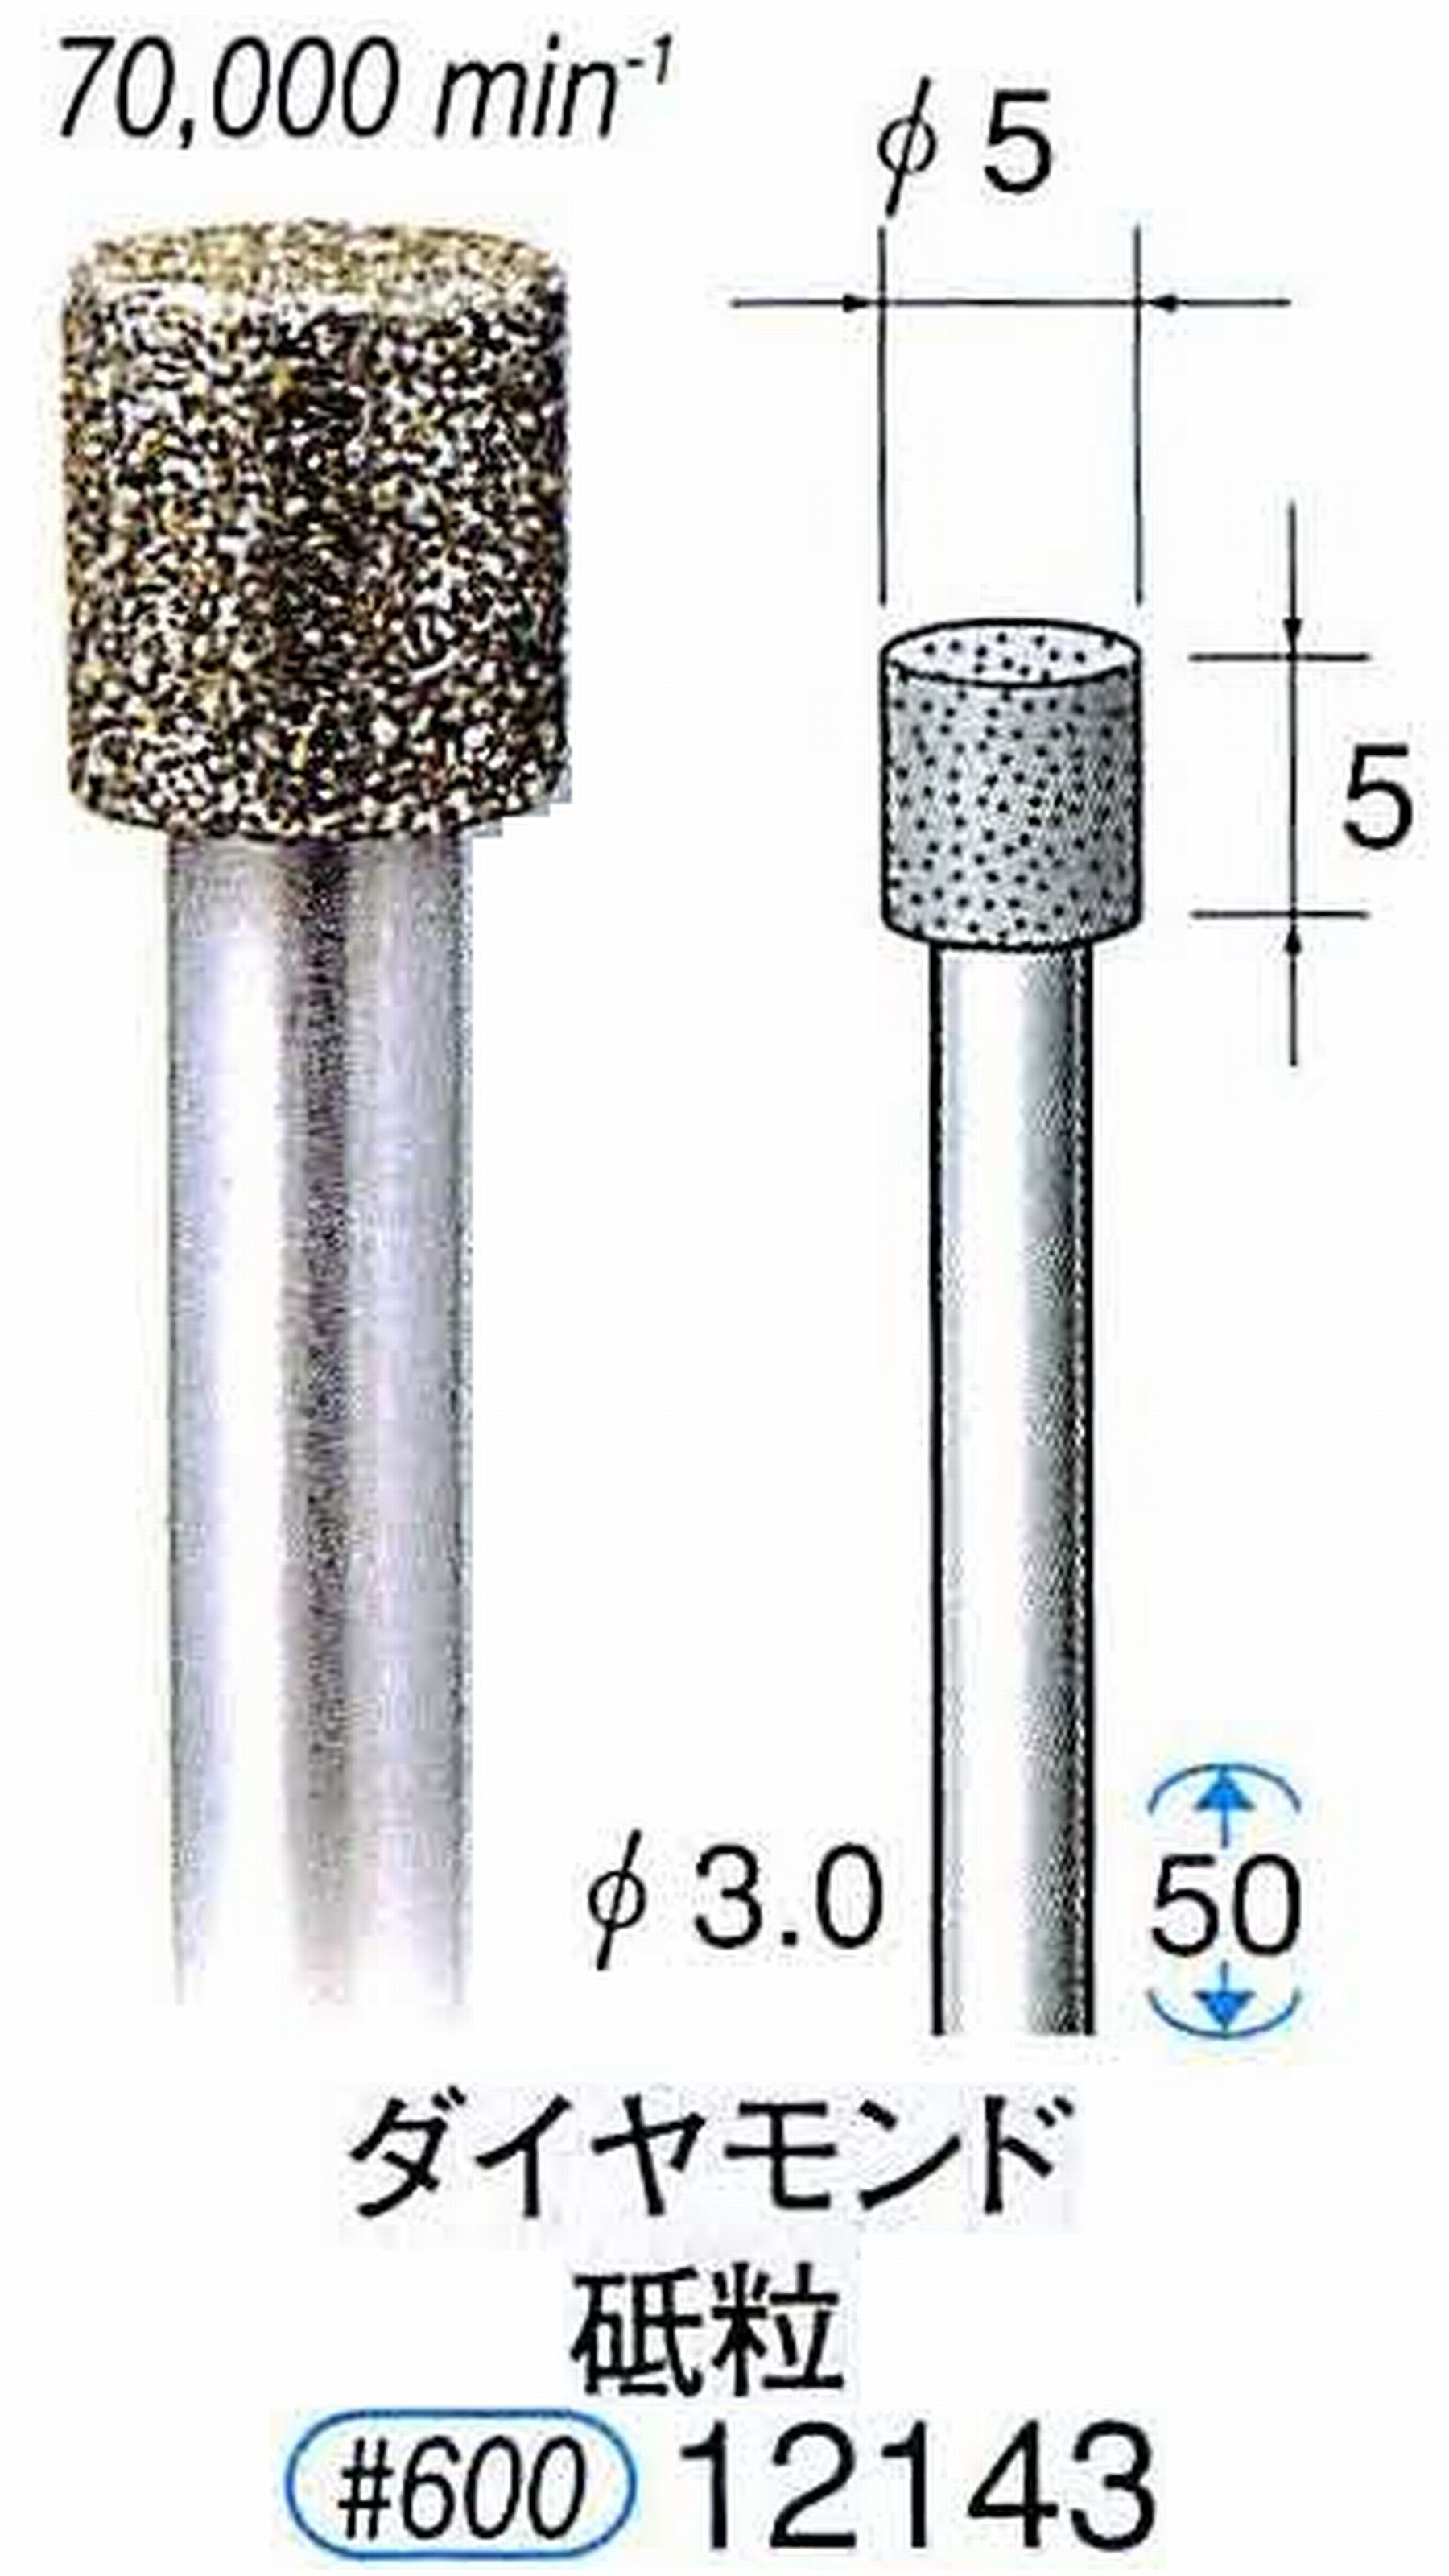 ナカニシ/NAKANISHI 電着ダイヤモンド ダイヤモンド砥粒 軸径(シャンク)φ3.0mm 12143